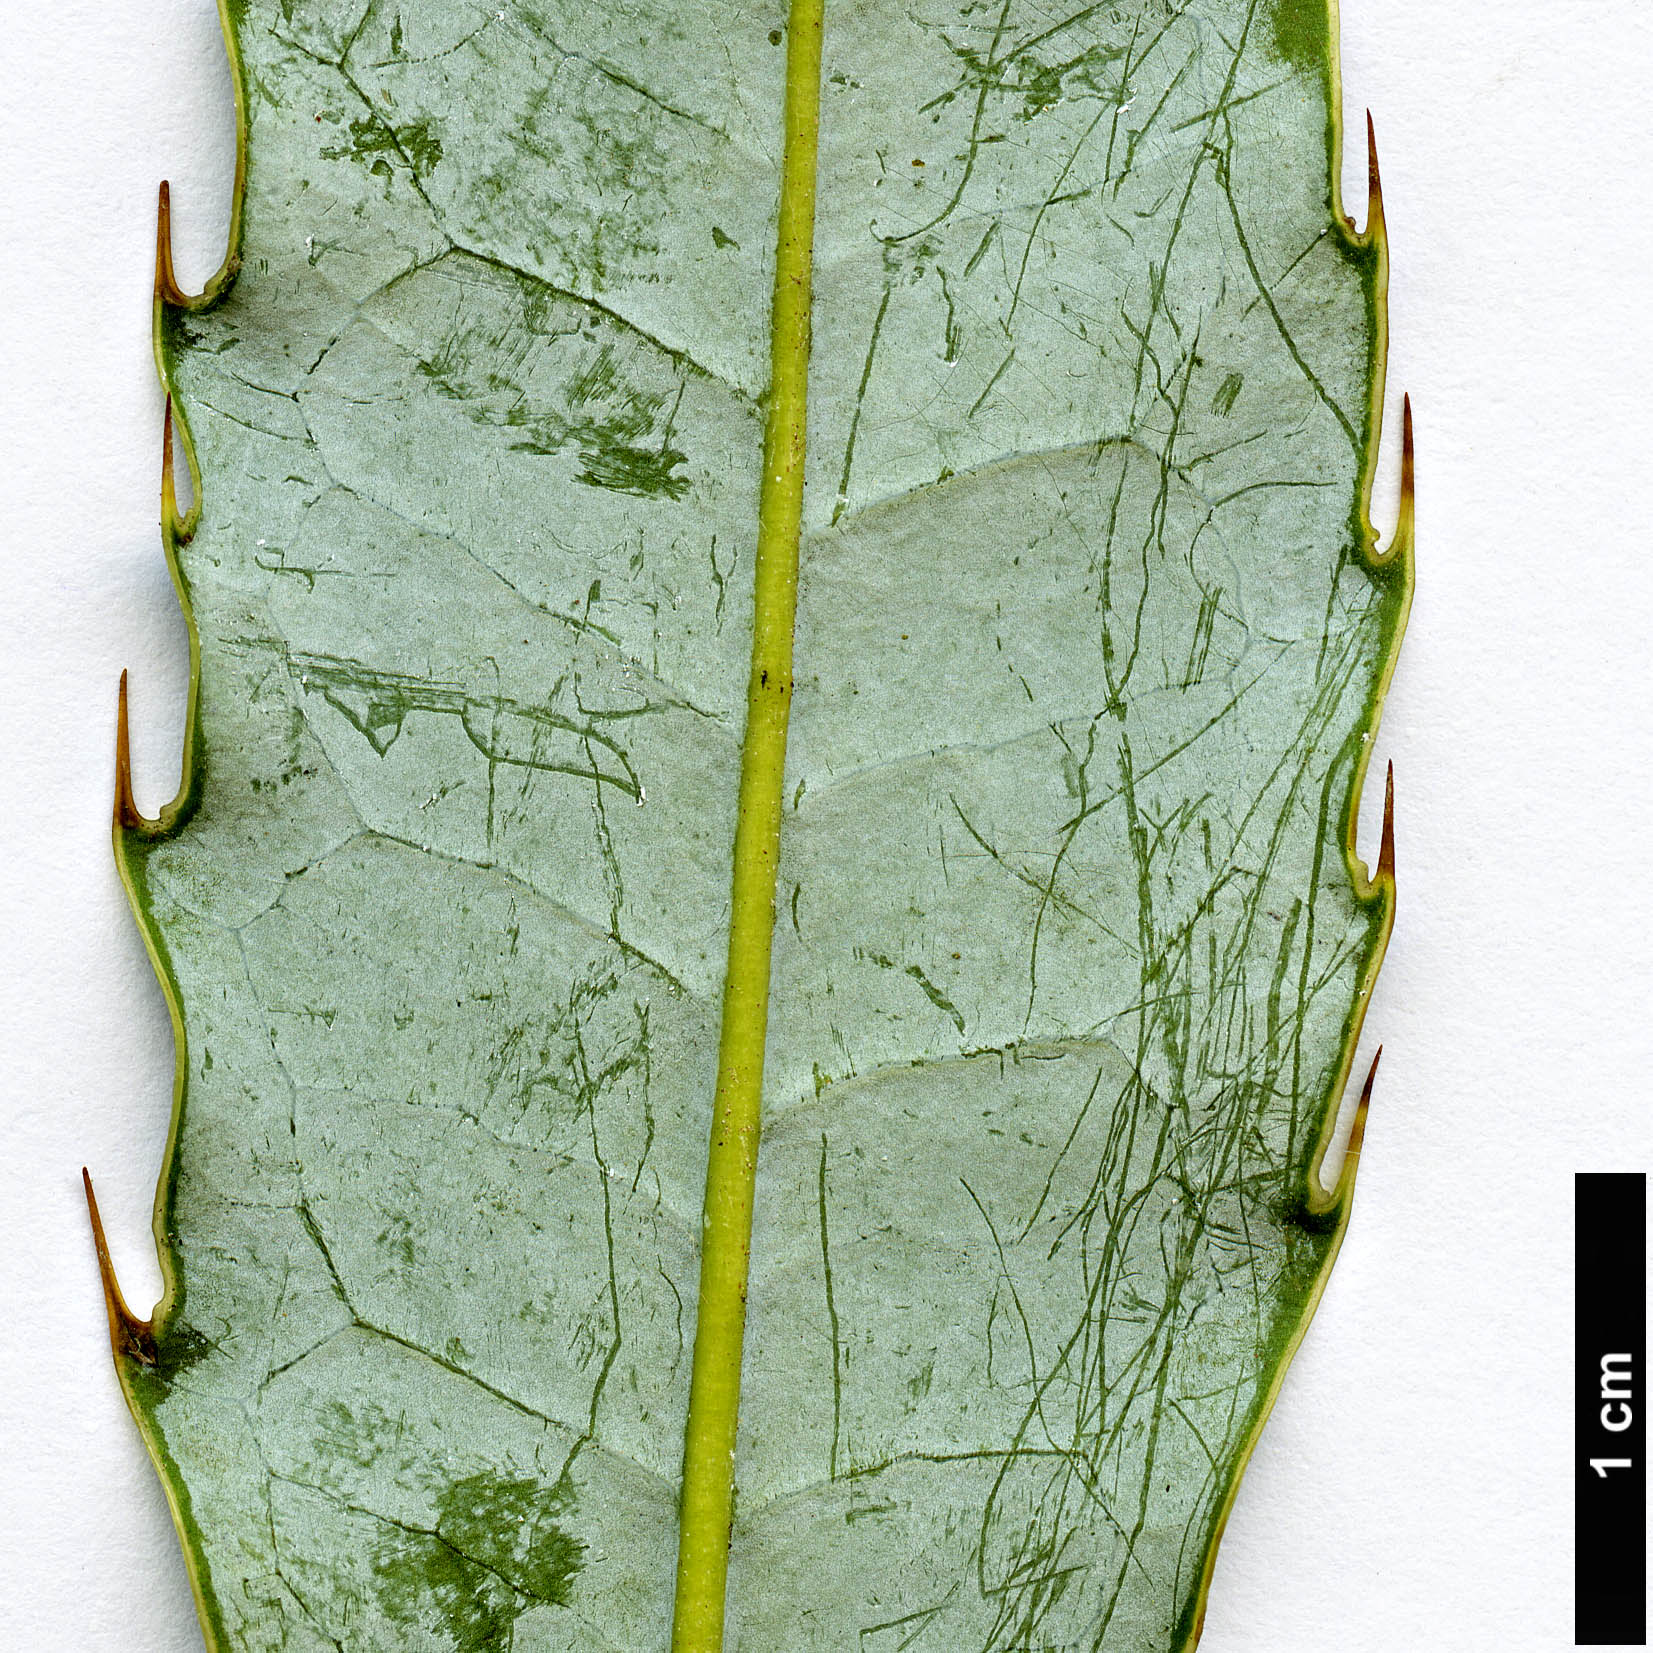 High resolution image: Family: Berberidaceae - Genus: Berberis - Taxon: subacuminata